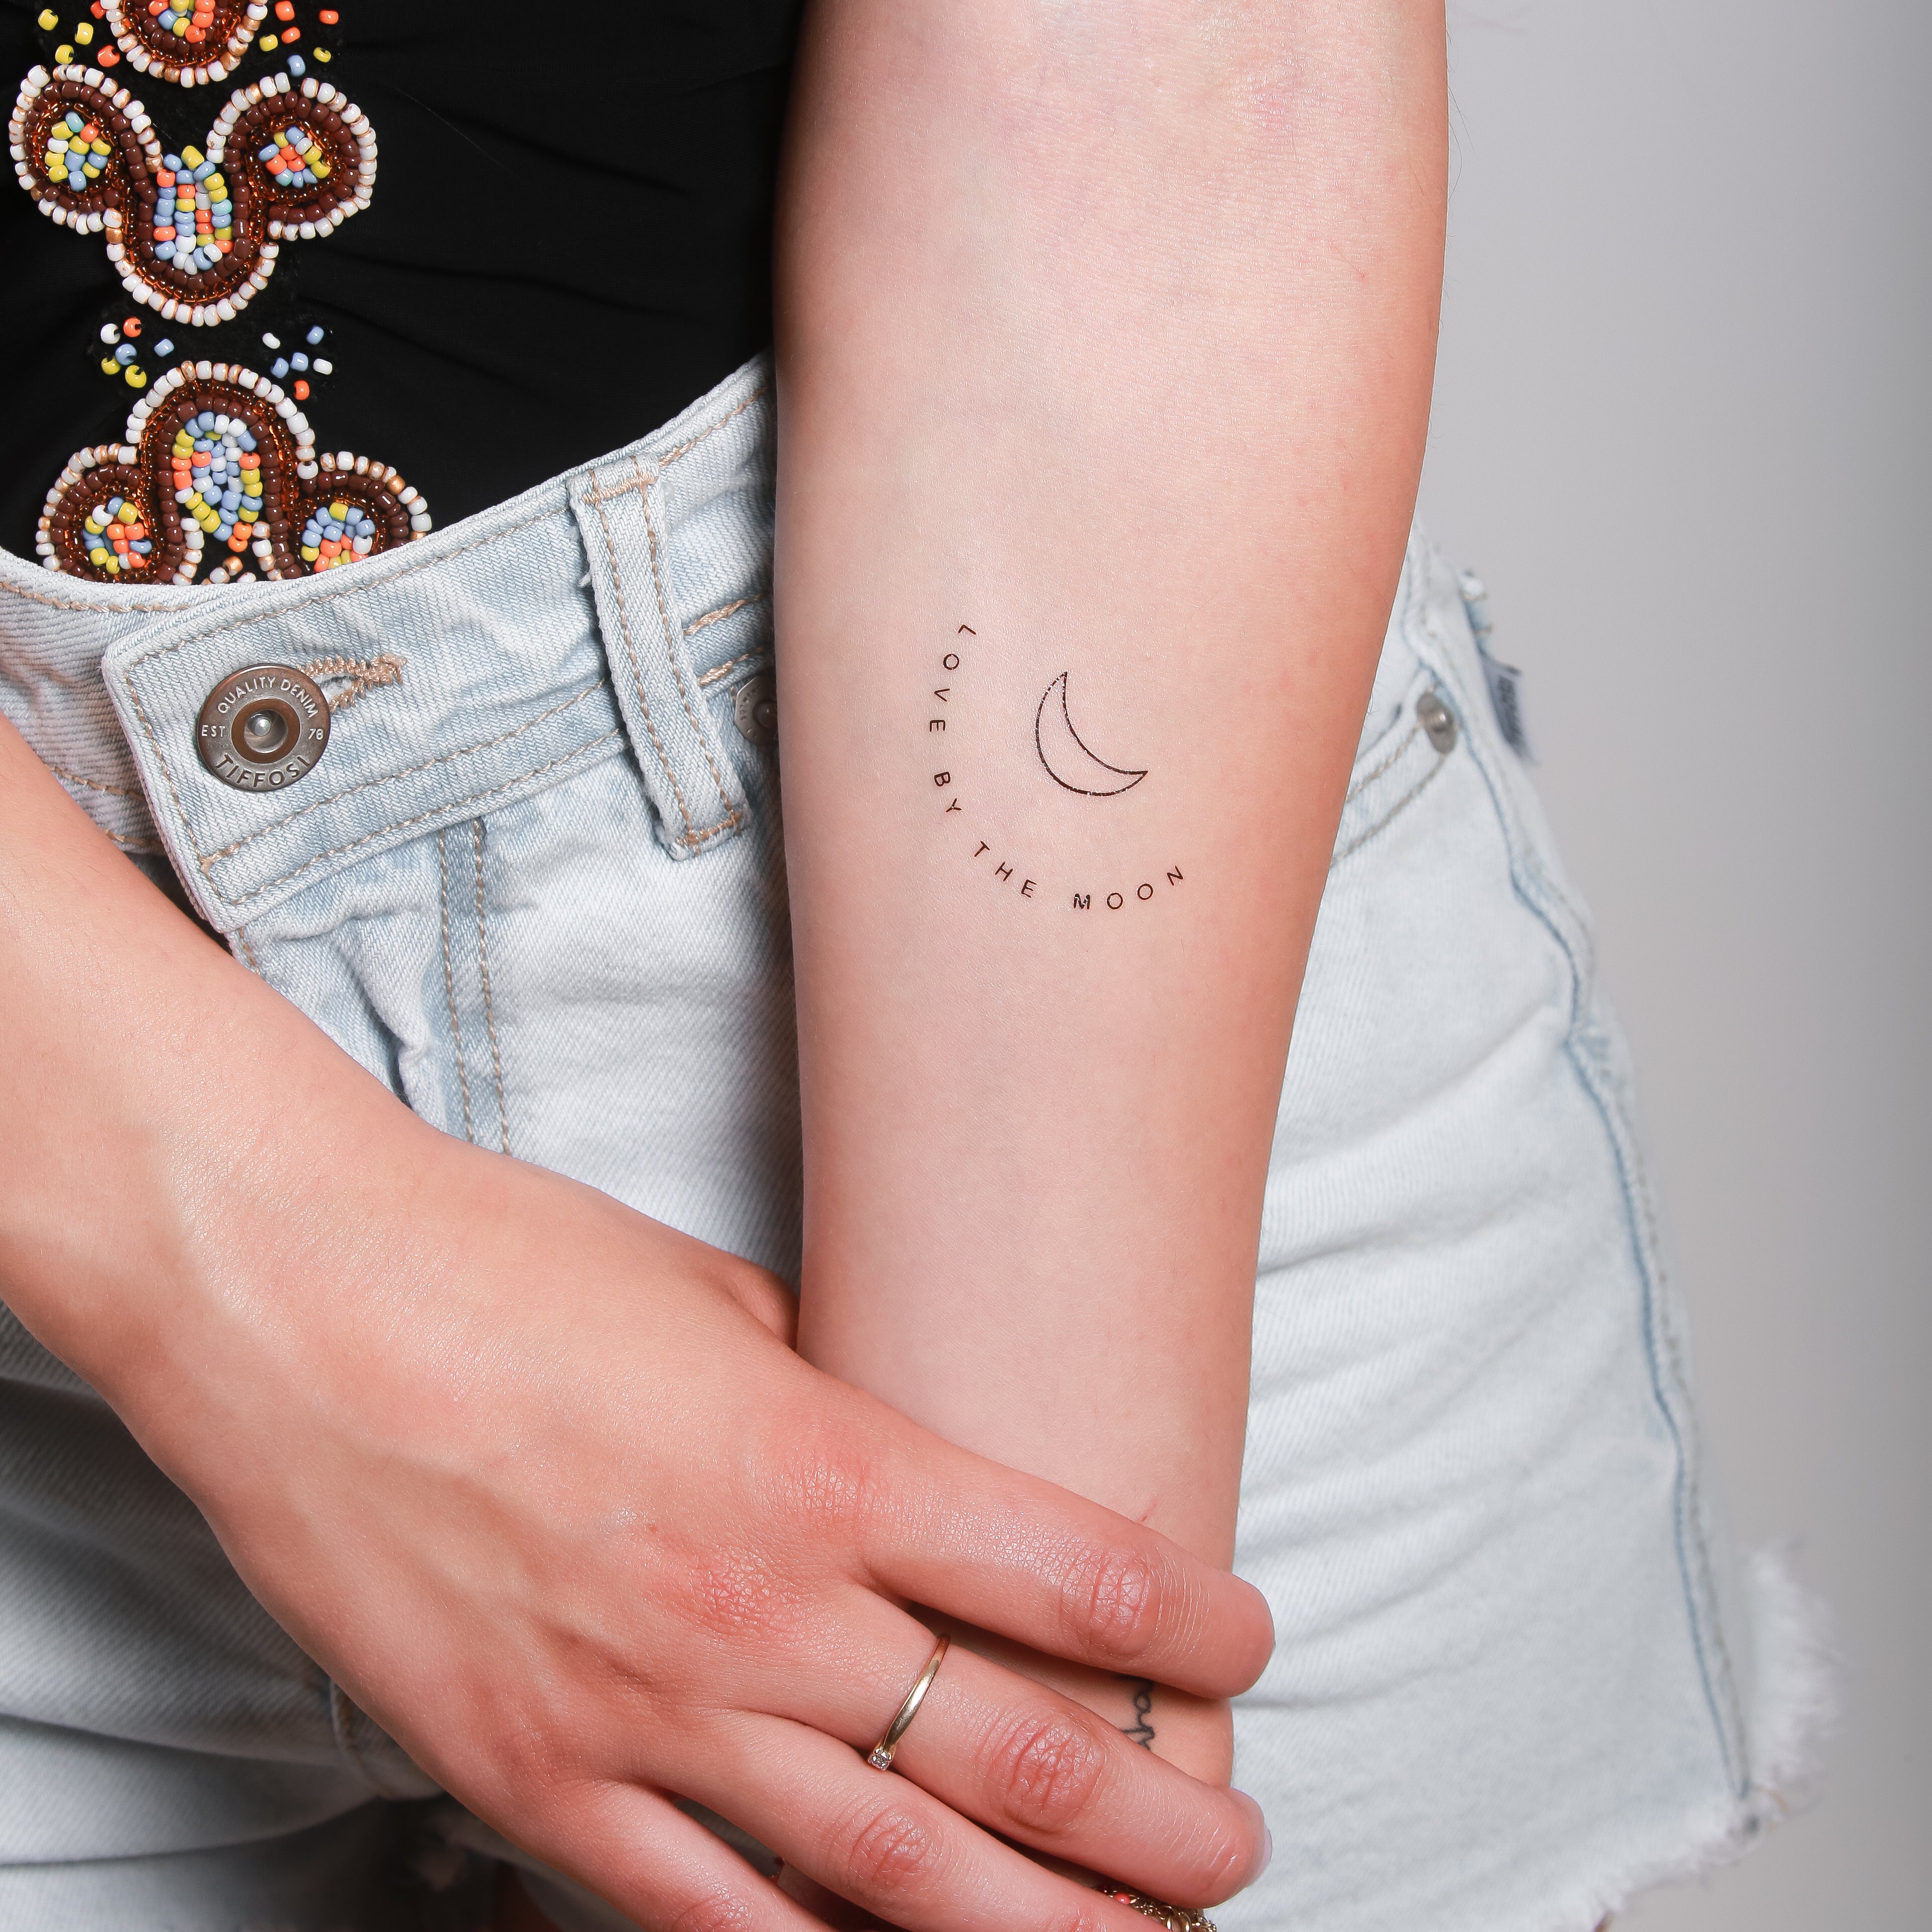 Tattoo uploaded by Steja • 2 birth marks makes one smile 😊 Instagram:  @nikita.tattoo #tattooartist #tattooart #blackworktattoo #blackwork  #lineworktattoo #LineworkTattoos #linework #thinlinetattoo #fineline  #dotwork #dotworktattoo #minimalism ...